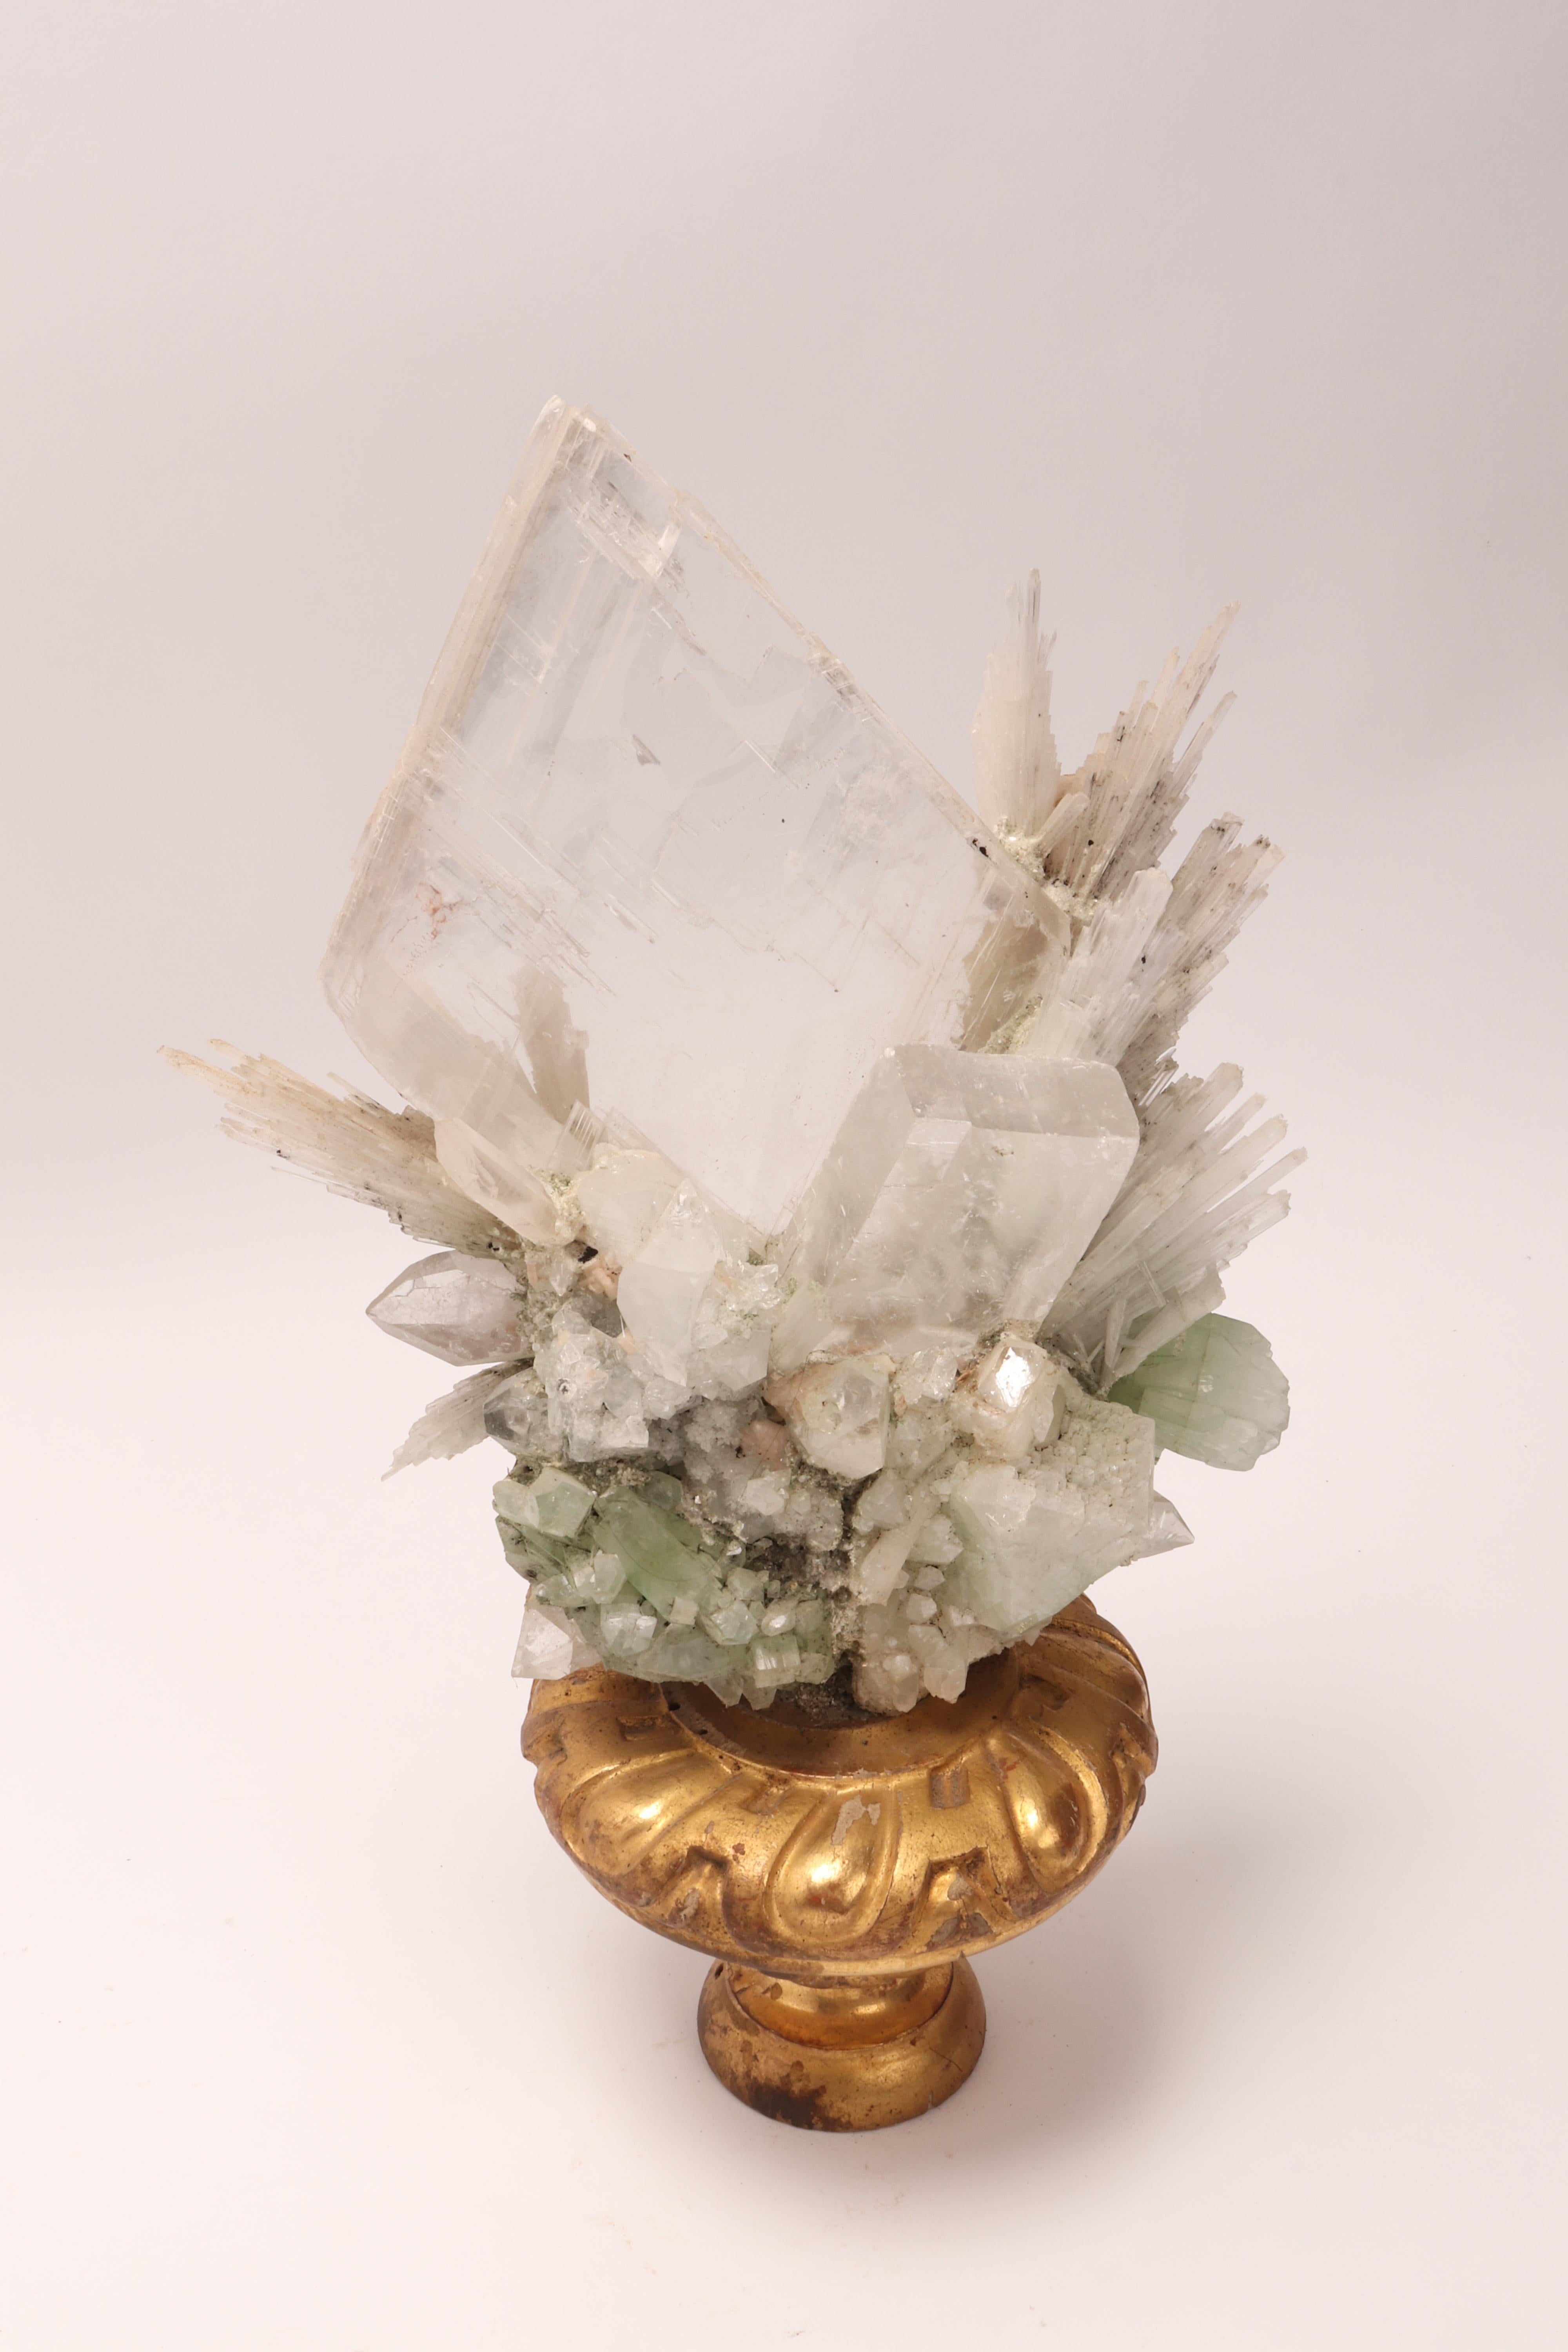 Natural Specimen Apophyllite Quartz and Calcite Flowers Crystals, Italy, 1880 1